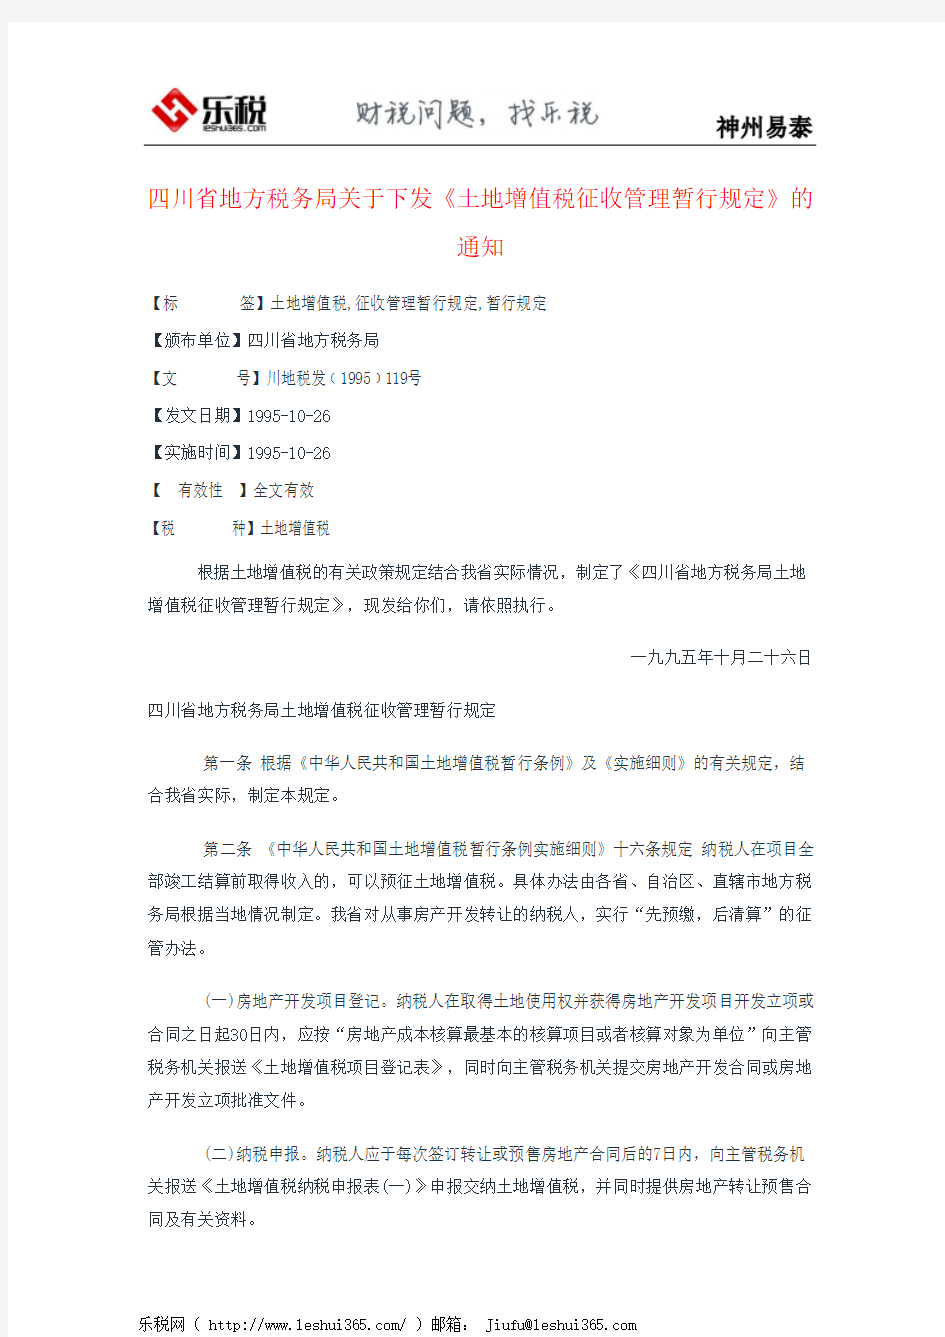 四川省地方税务局关于下发《土地增值税征收管理暂行规定》的通知